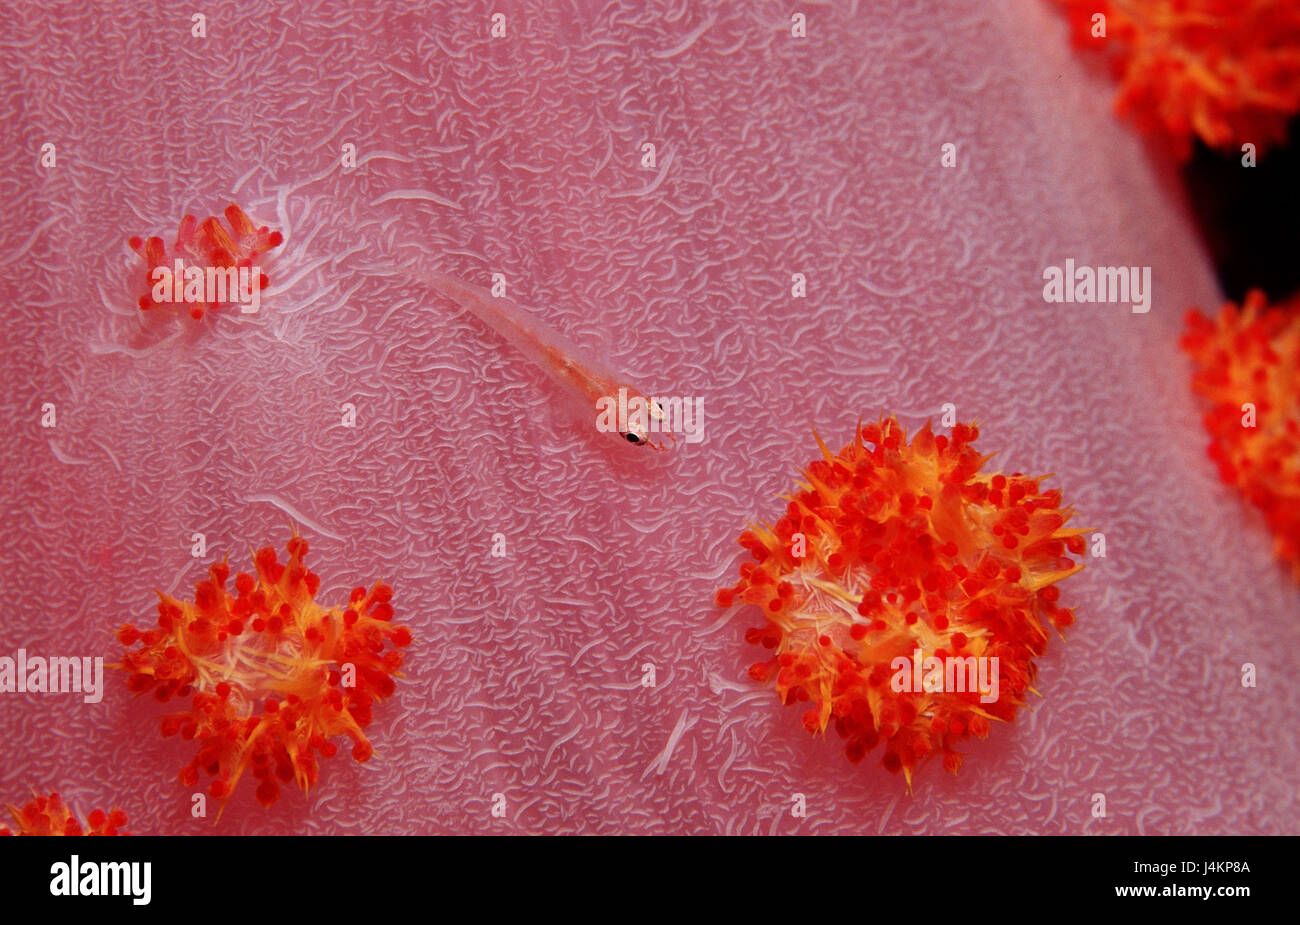 Mosambik-Zwerggrundel, Pleurosicya mossambica, soft coral, close up Stock Photo